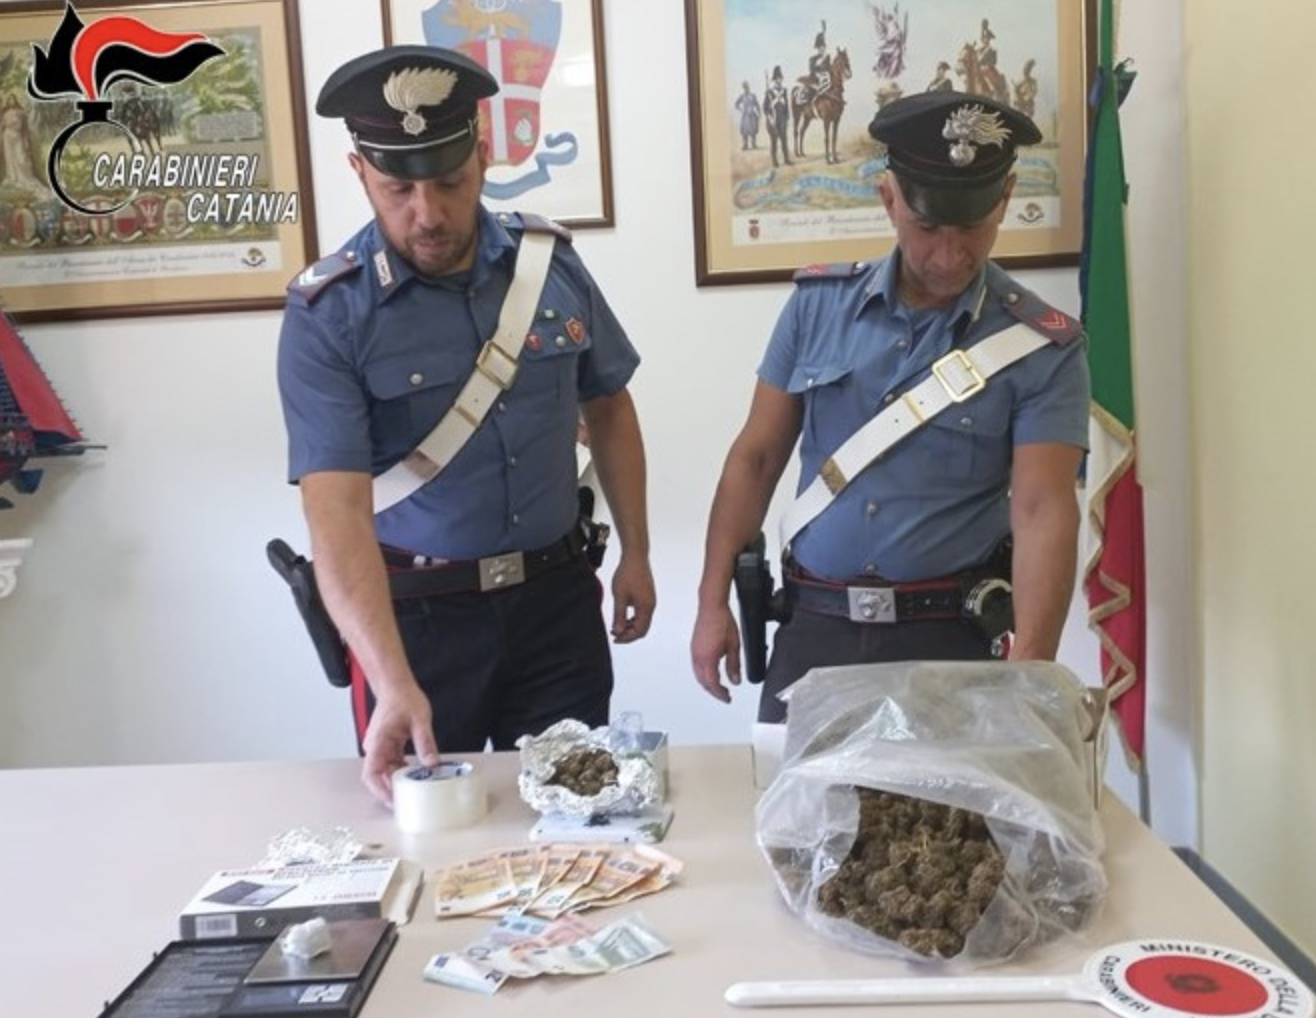 Gli trovano 800 grammi di 'fumo' durante una perquisizione: arrestato a Randazzo